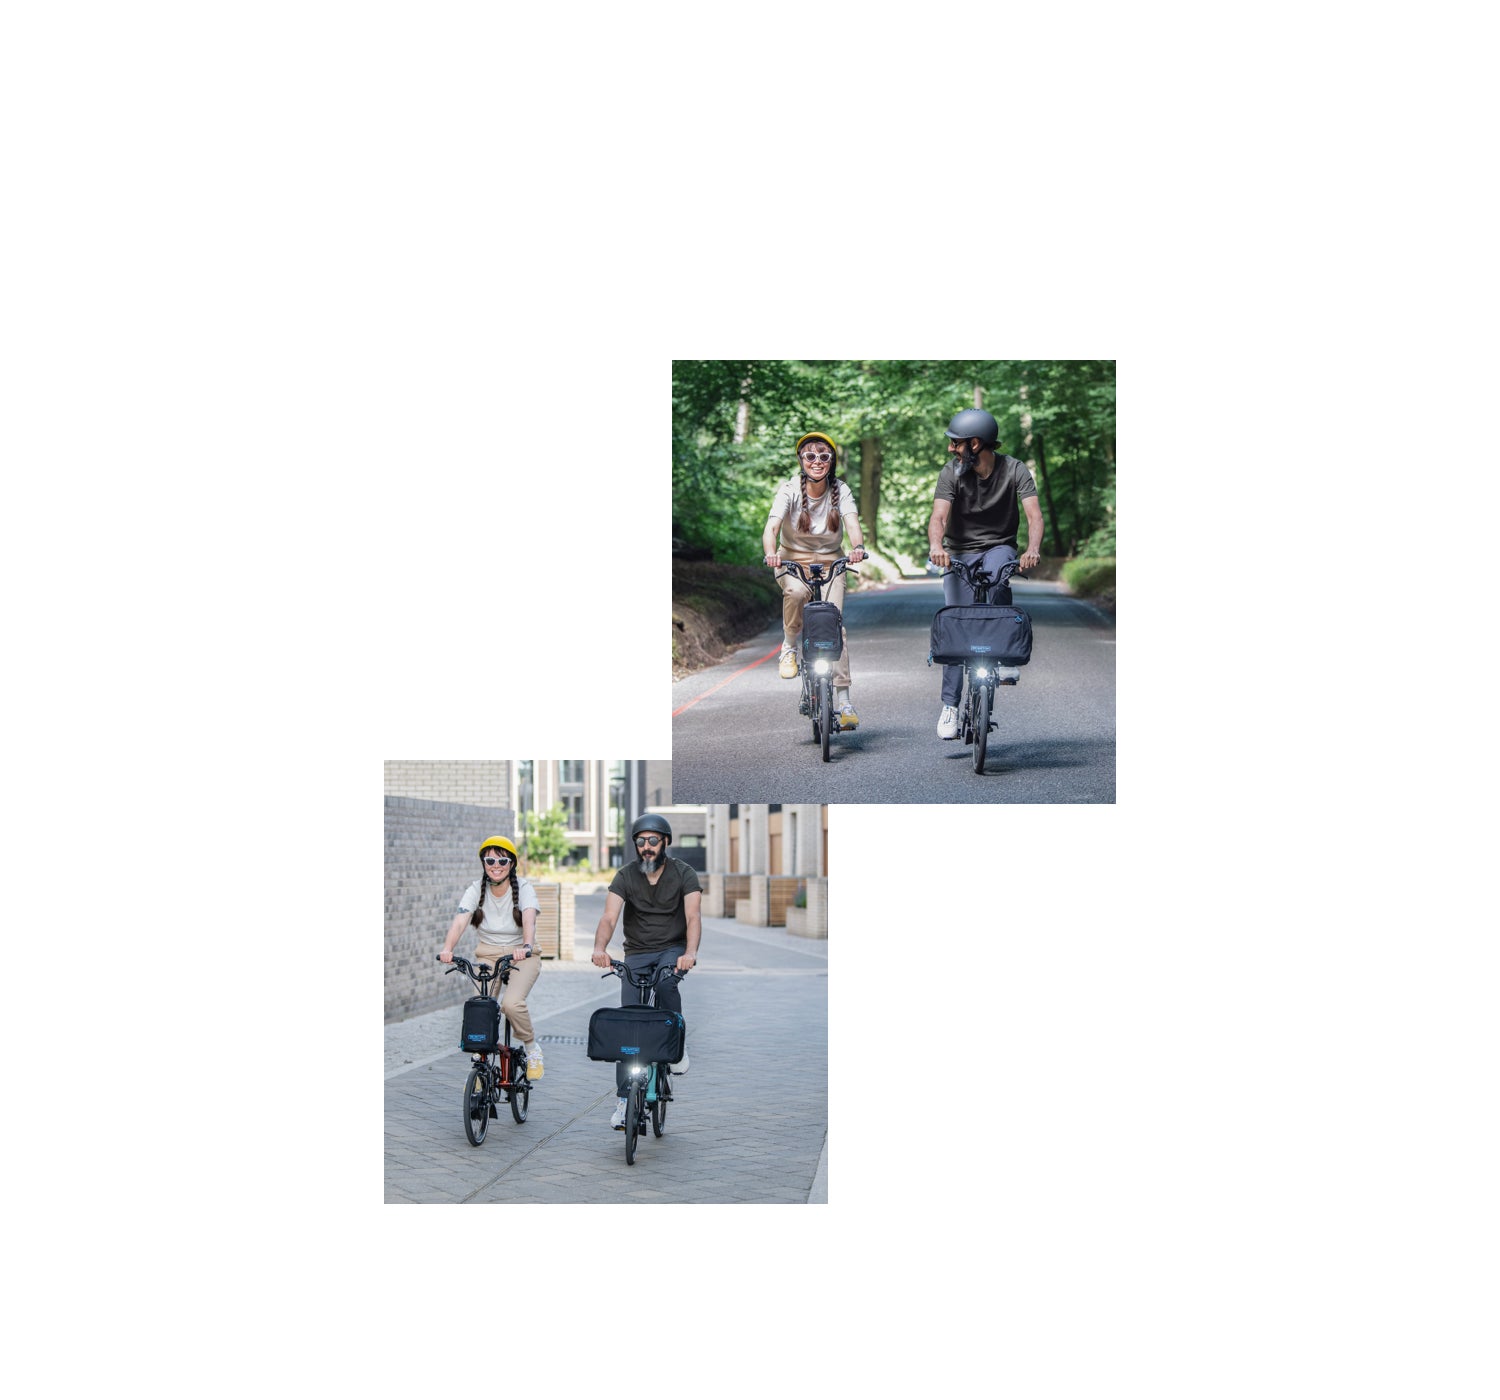 Une superposition graphique de deux images de mode de vie montrant des personnes heureuses conduisant des Brompton Electric C Line, accompagnée du texte « La liberté en ville et au-delà. ».